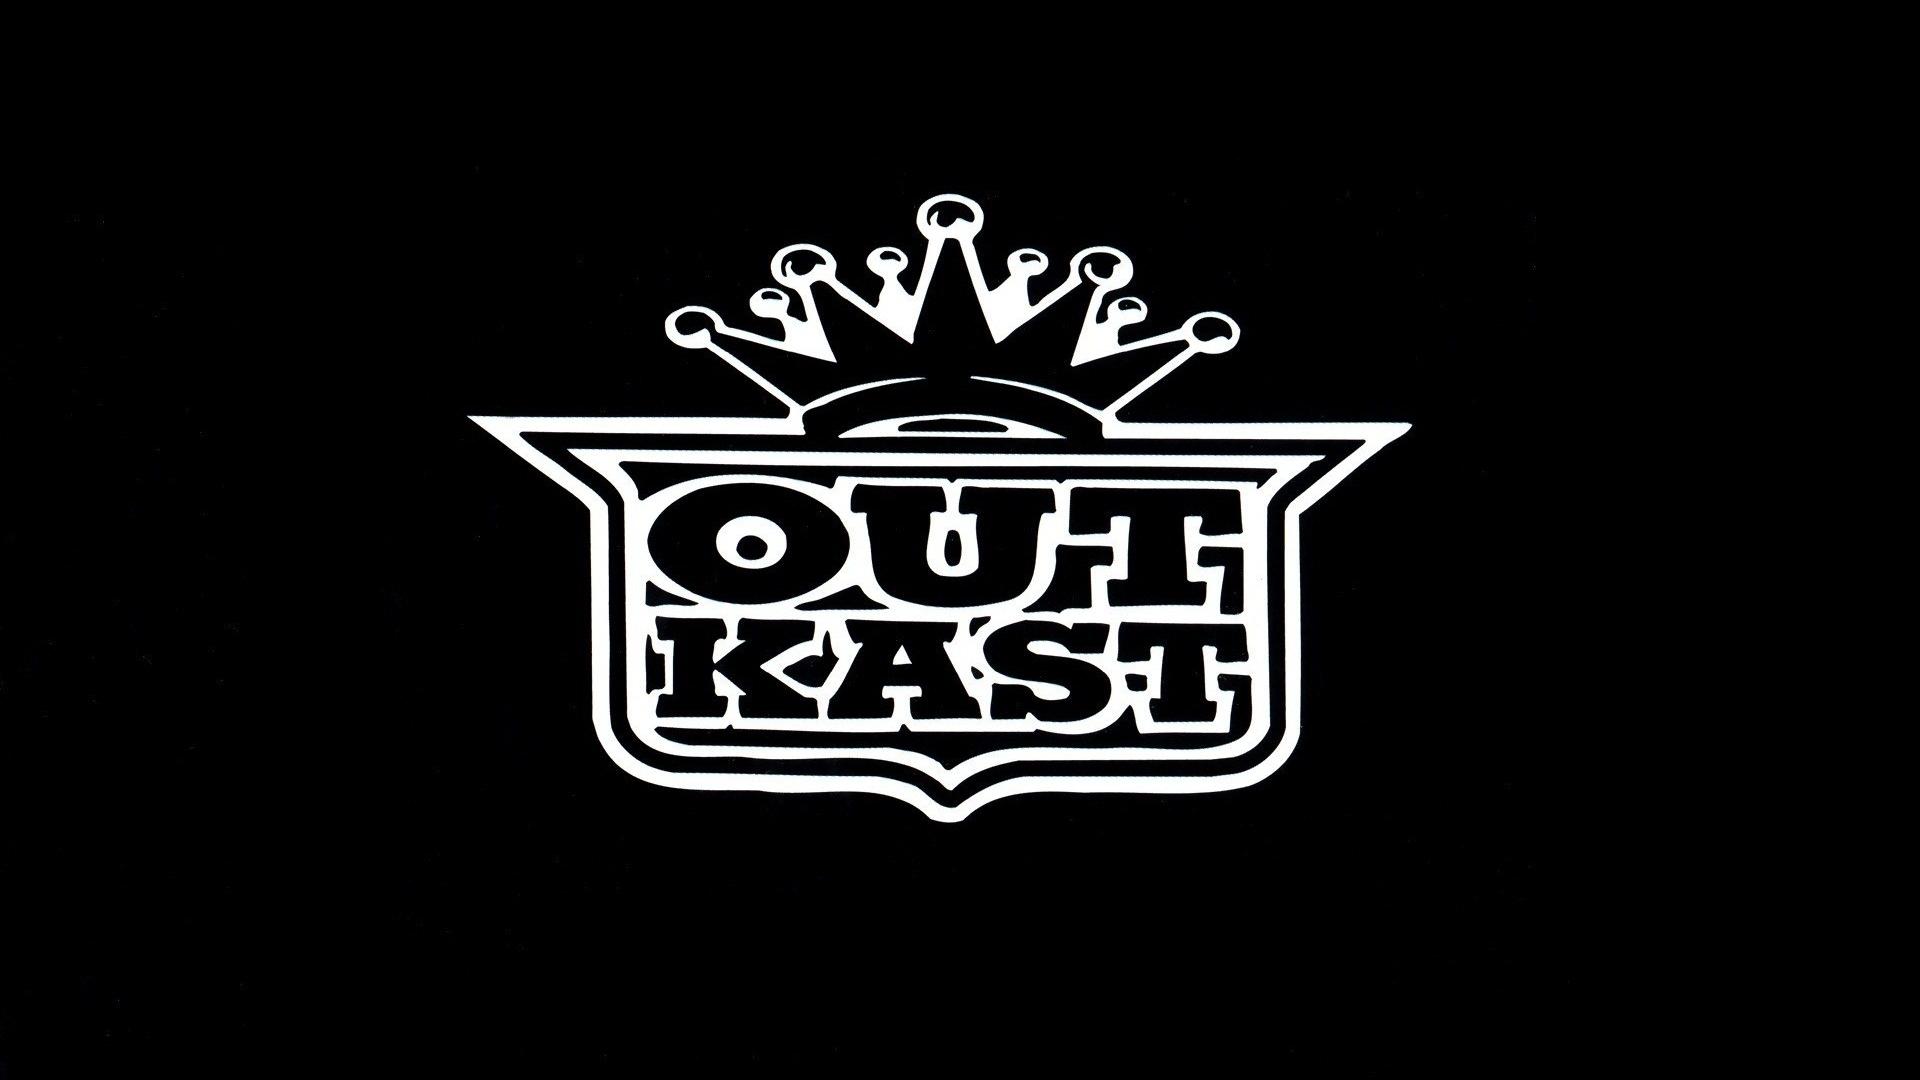 Outkast album covers hip-hop music rap wallpaper | (87984)